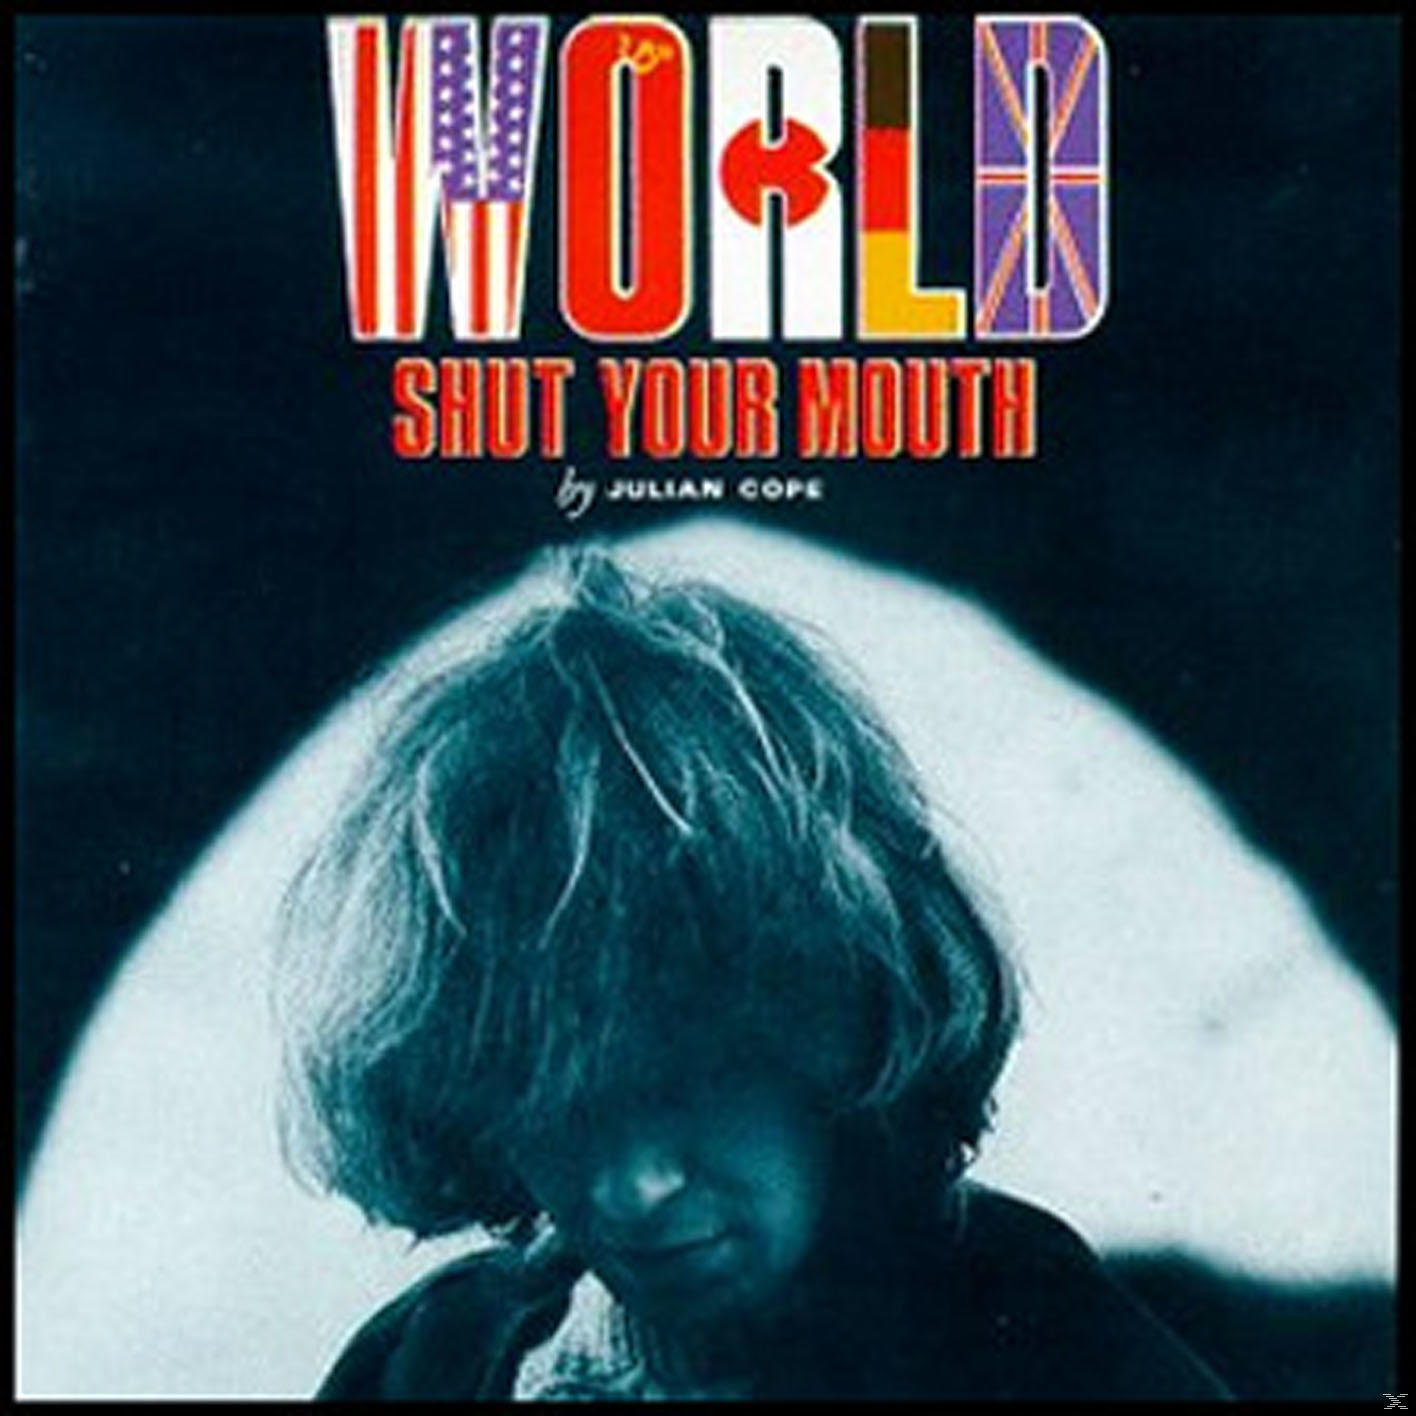 Mouth Your Julian Cope Shut - - (CD) World